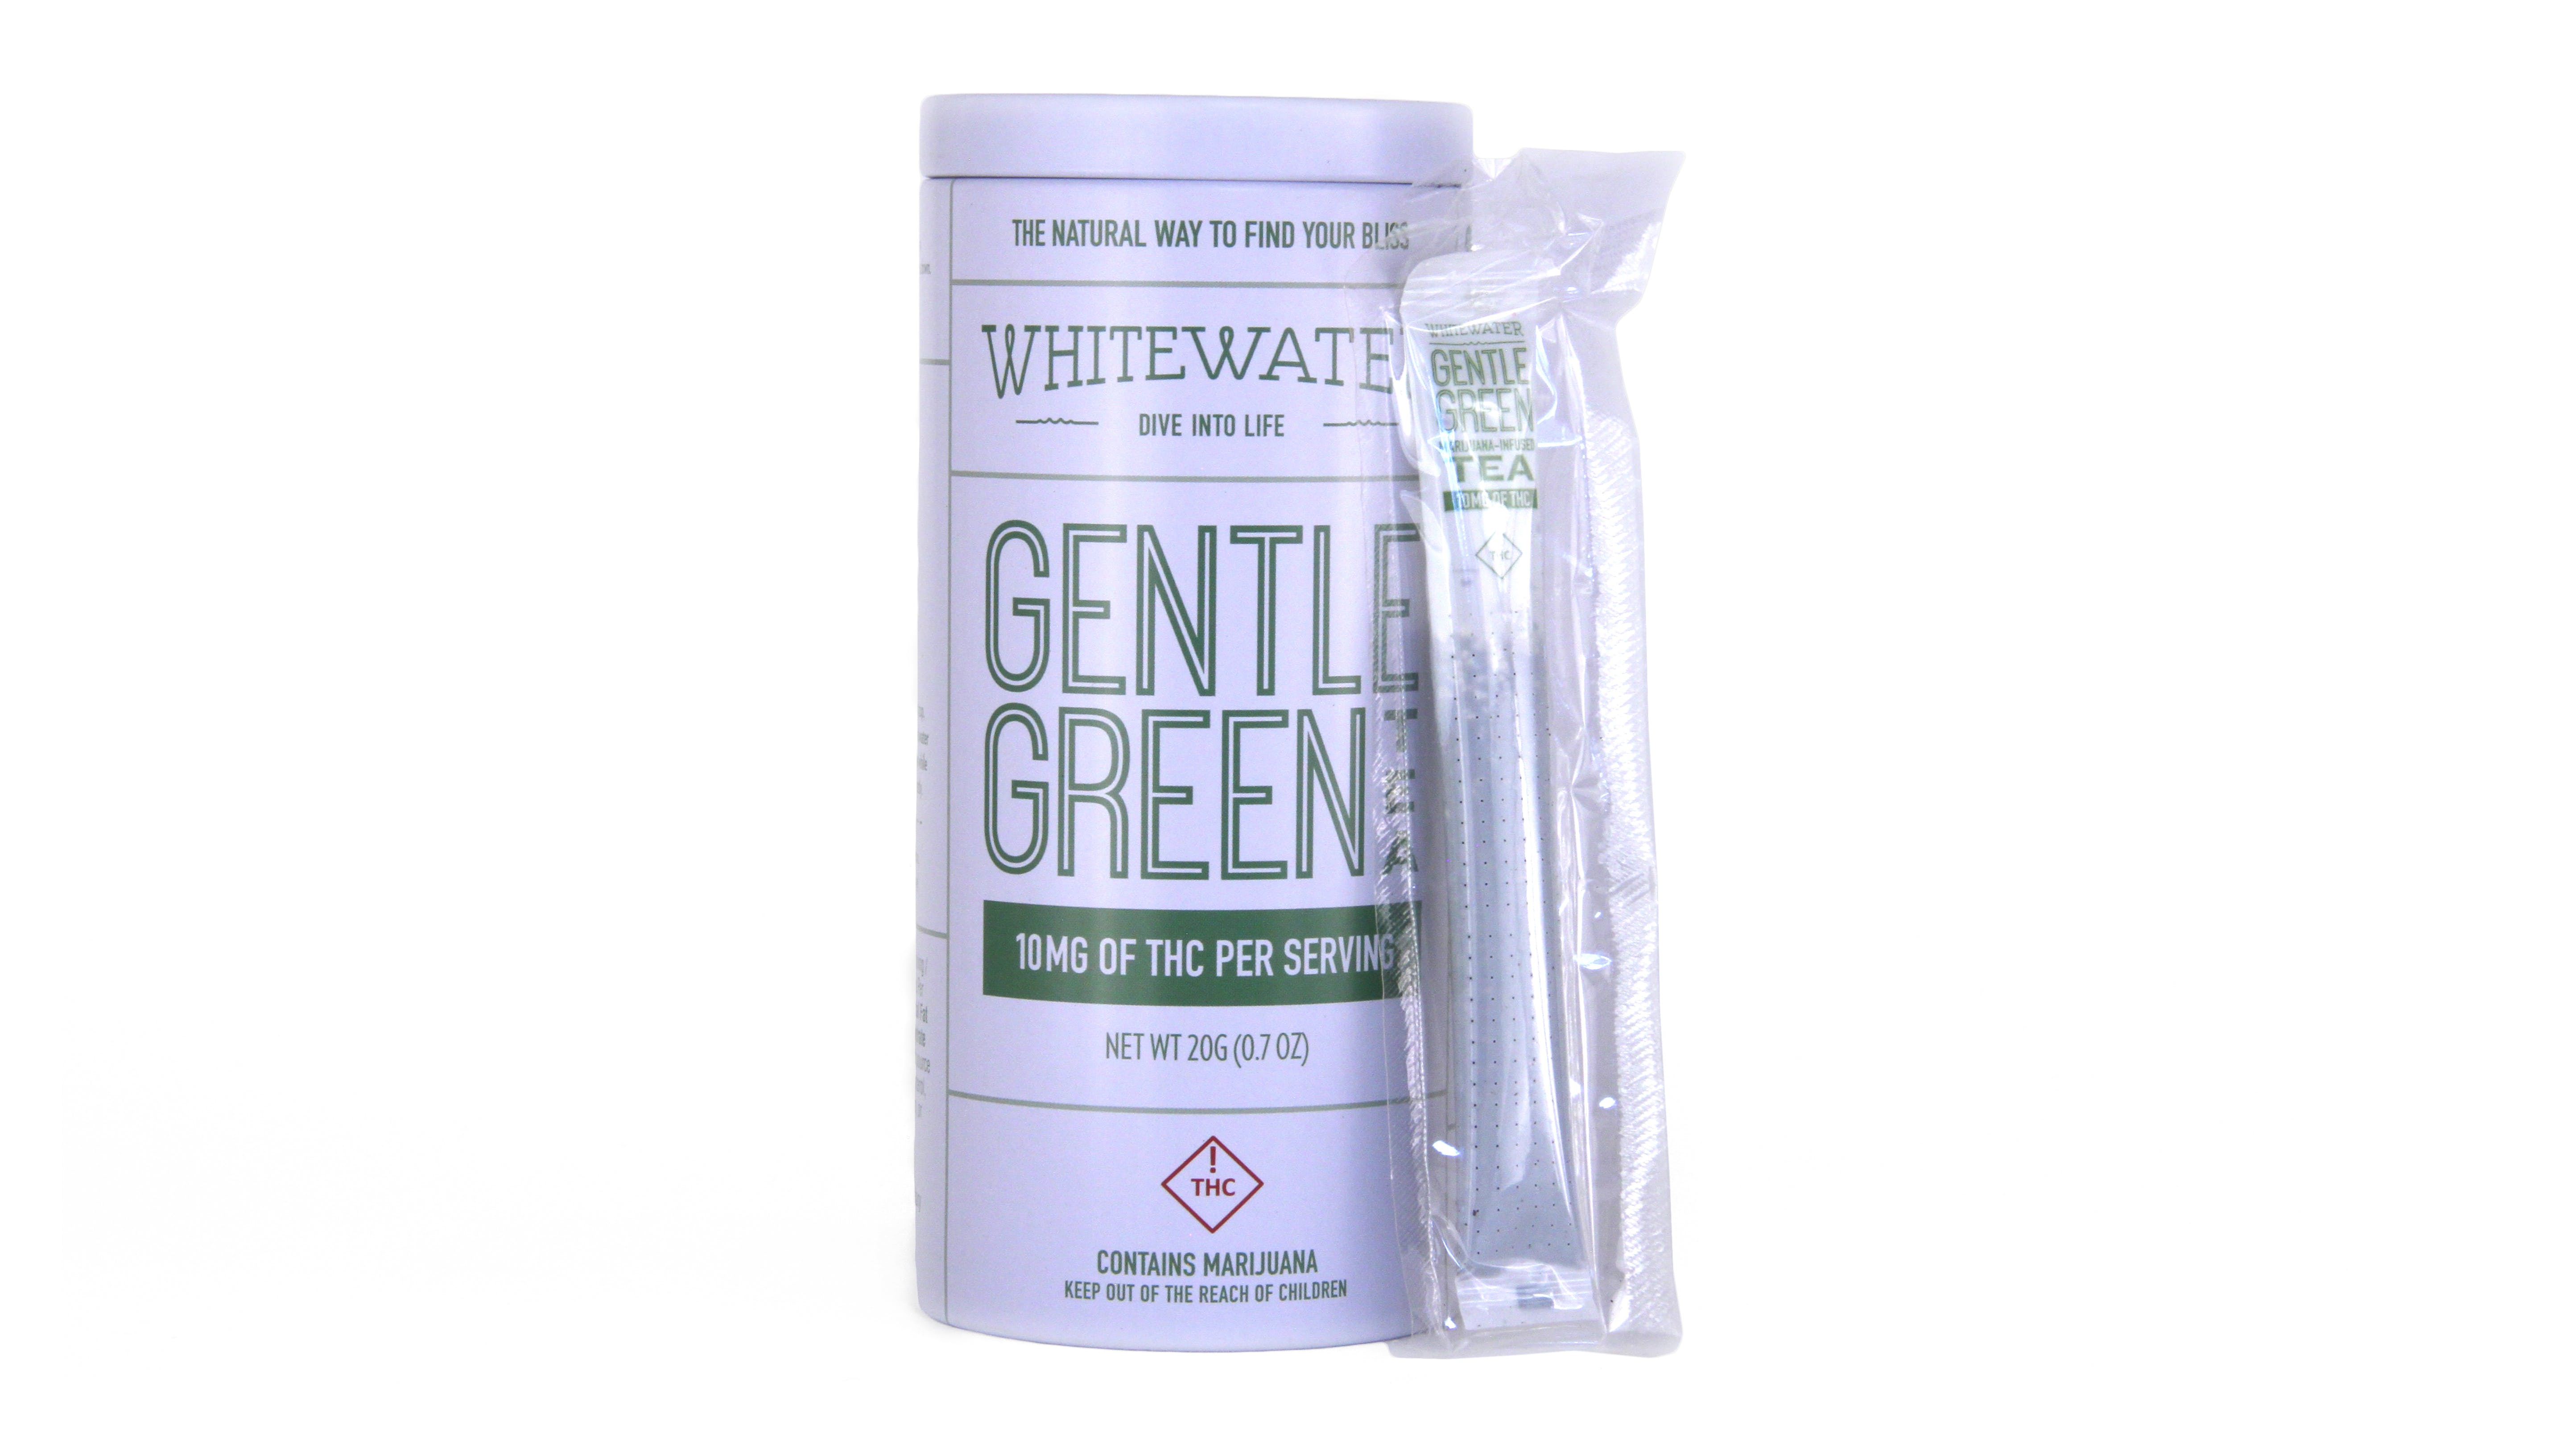 edible-stillwater-tea-80mg-green